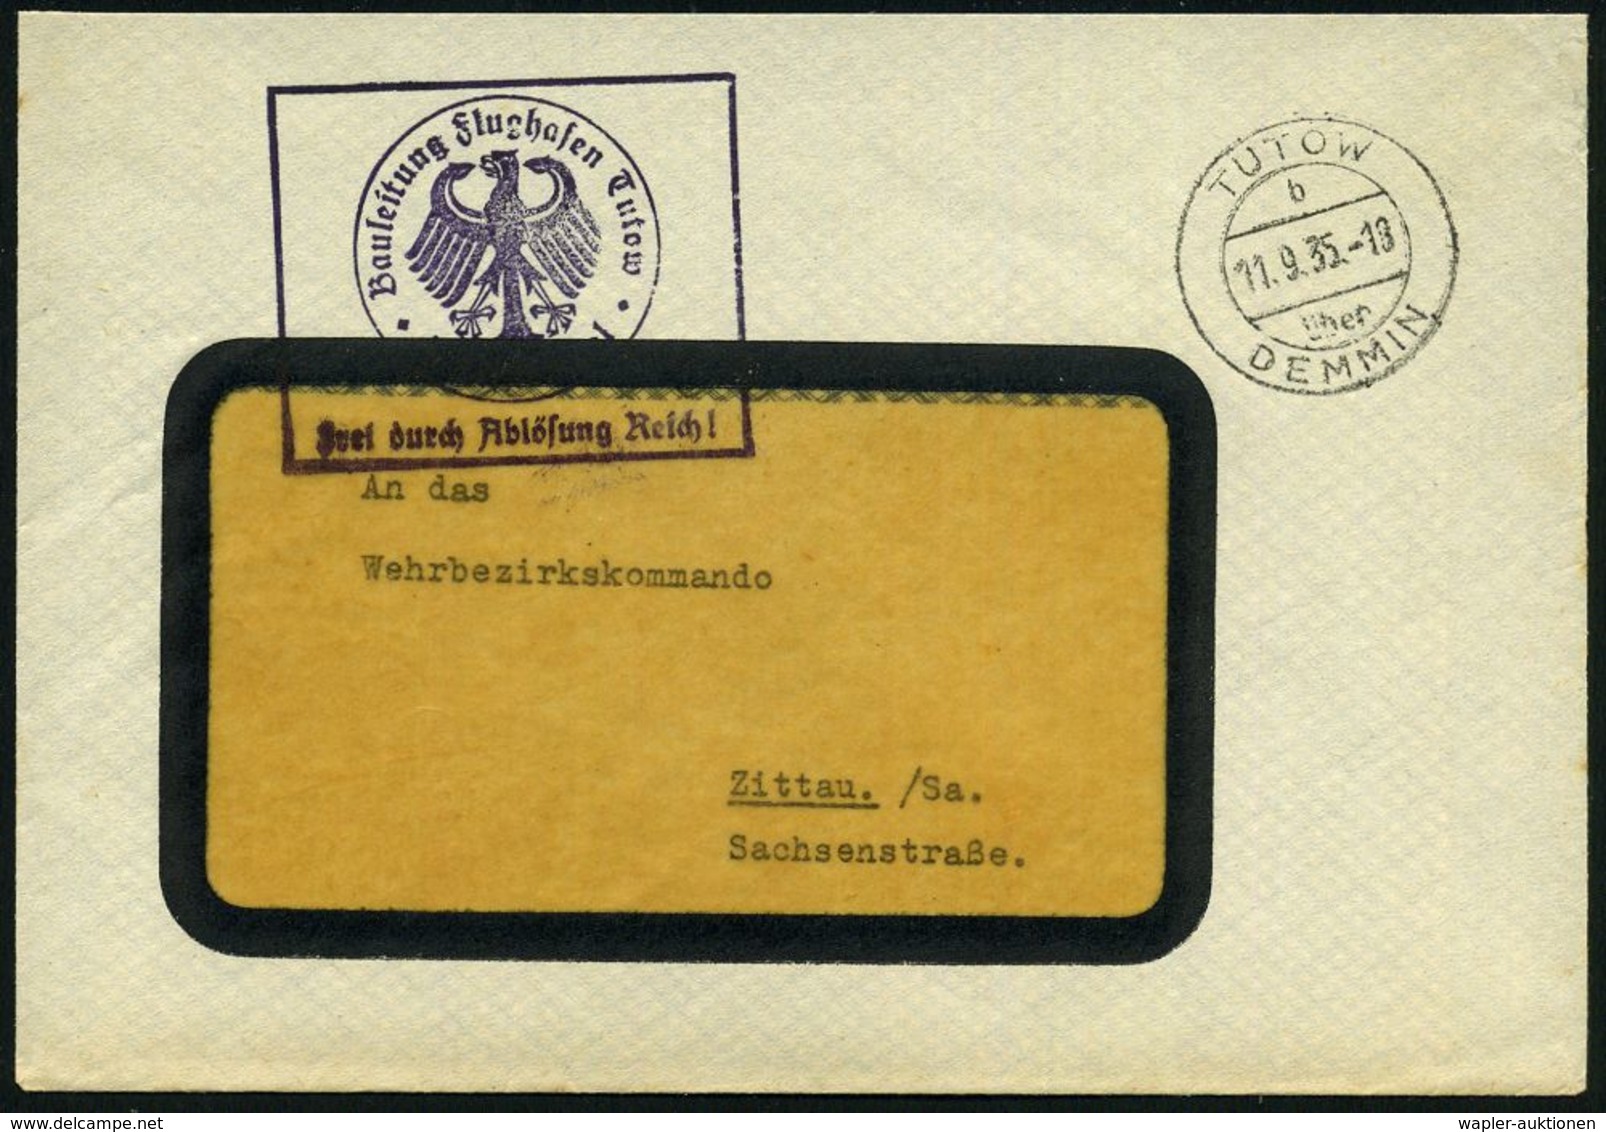 TUTOW/ B/ über/ DEMMIN 1935 (11.9.) 2K-Steg = PSt. II + Viol. Ra.: Bauleitung Flughafen Tutow/FdAR, Noch Alter Weimarer  - Avions